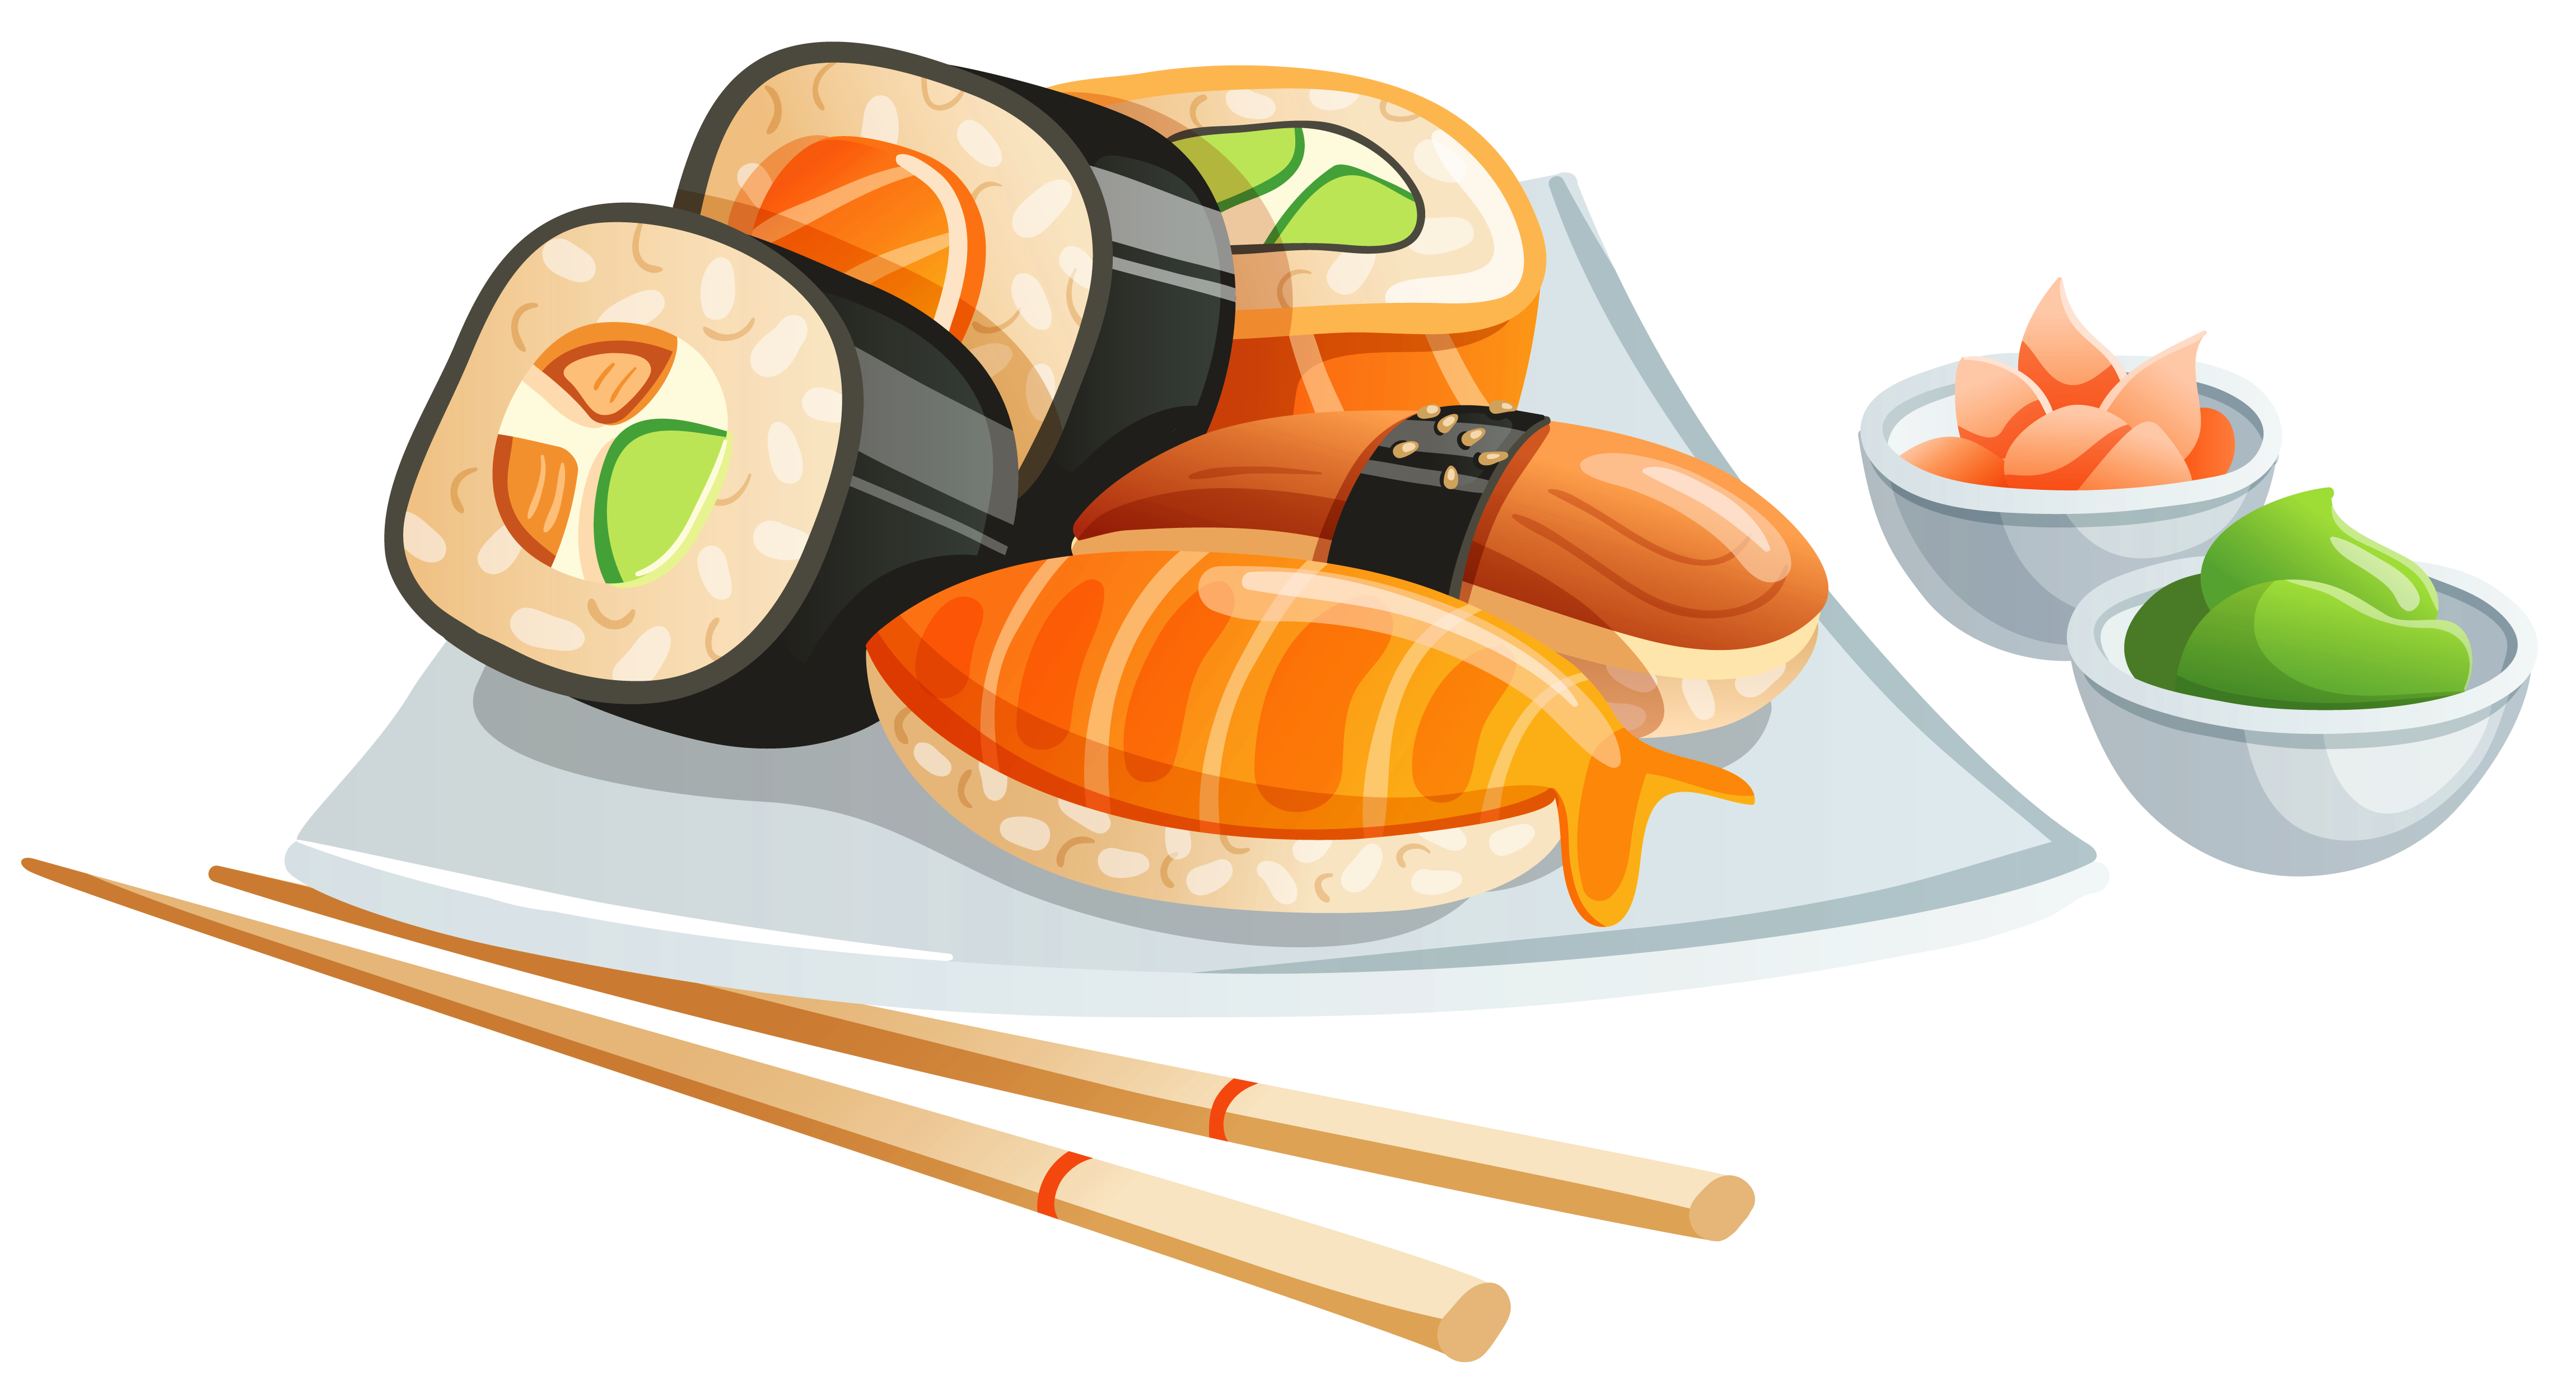 Immagine giapponese dellhq gratis del cibo giapponese